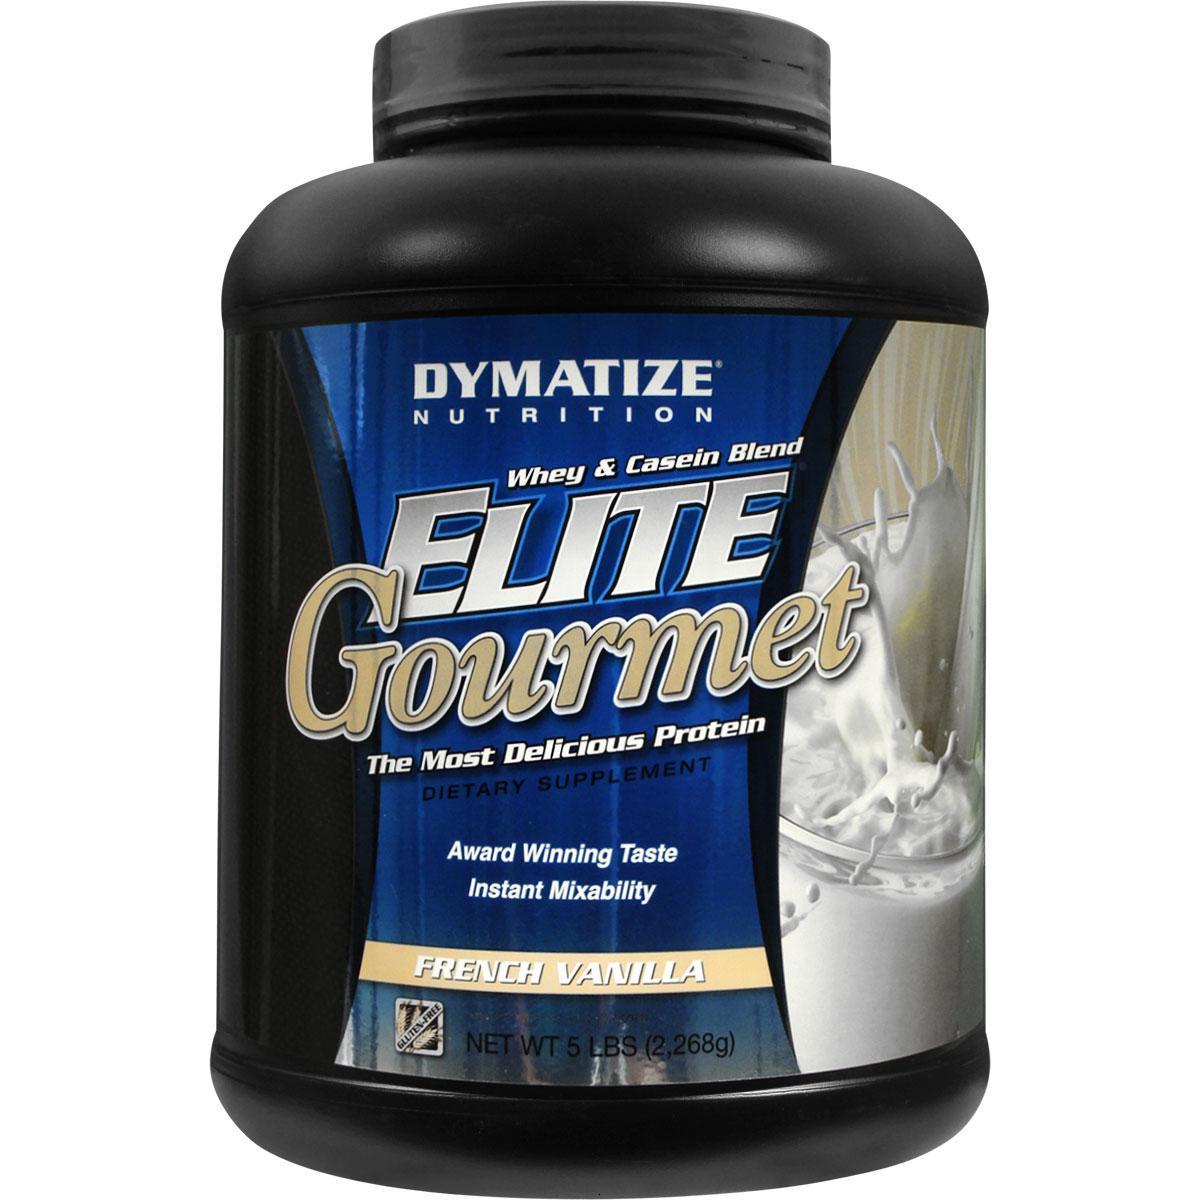 Dymatize Elite Gourmet Protein